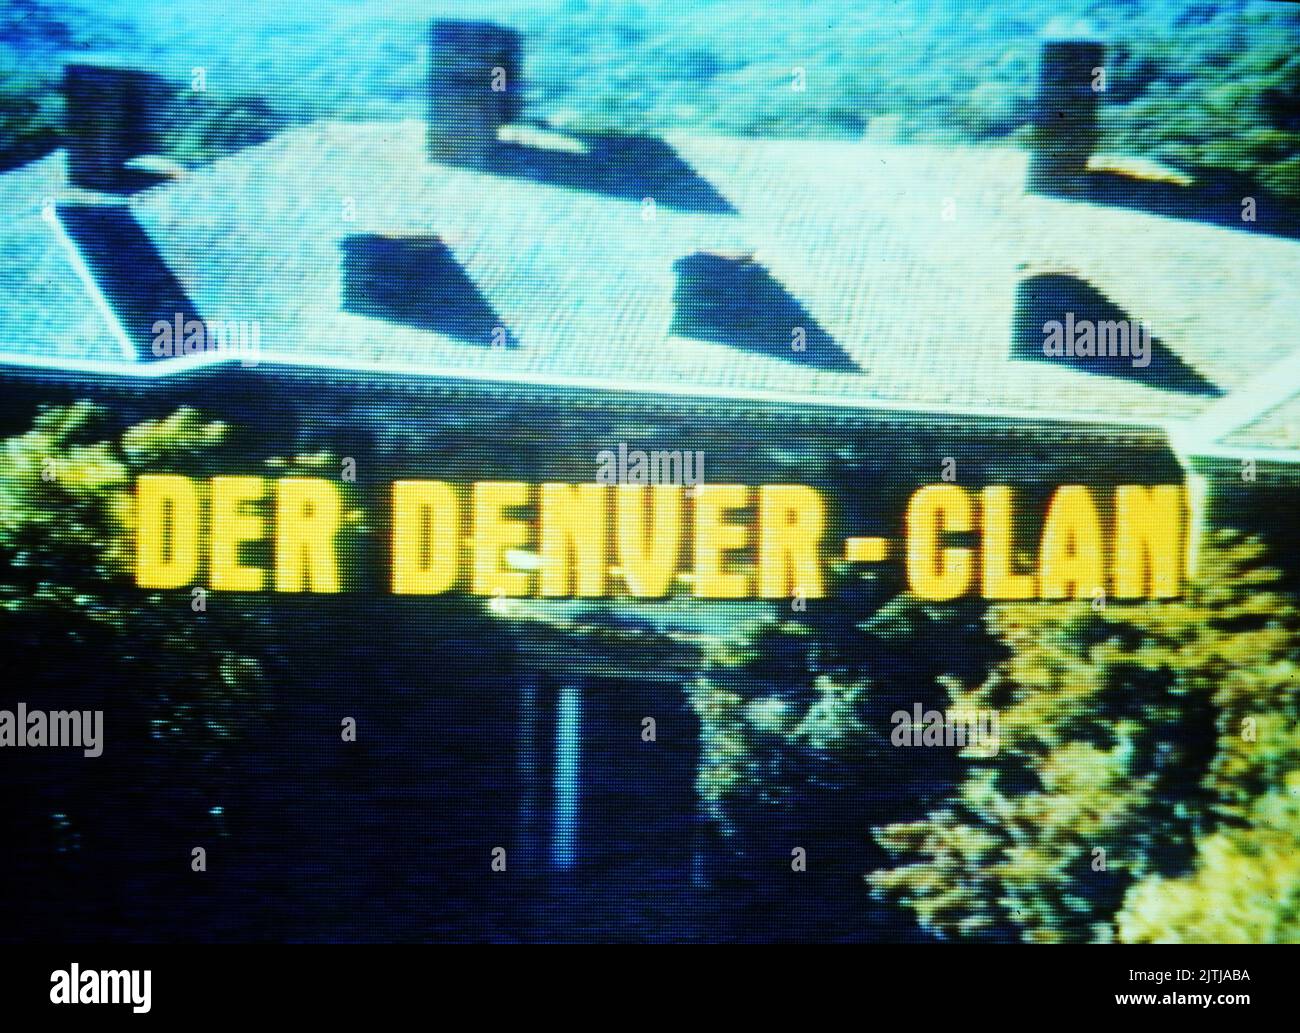 Dynasty, aka Der Denver Clan, Fernsehserie, USA 1981 - 1989, Mittwoch abend, 21 Uhr, ZDF, Serienlogo Foto de stock